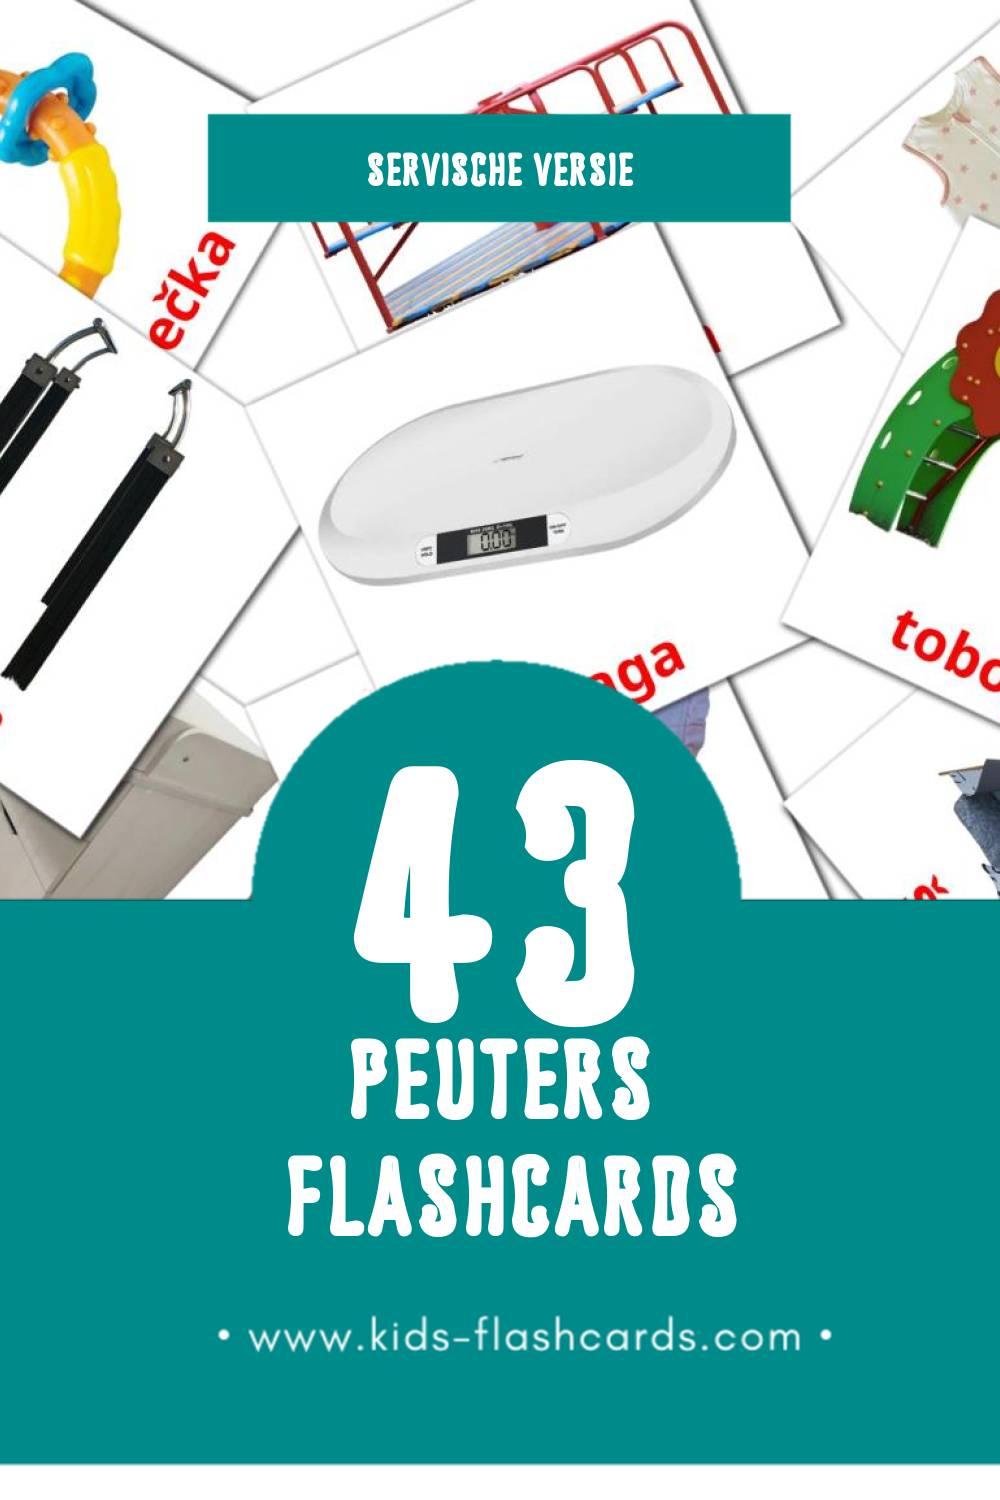 Visuele Beba Flashcards voor Kleuters (43 kaarten in het Servisch)